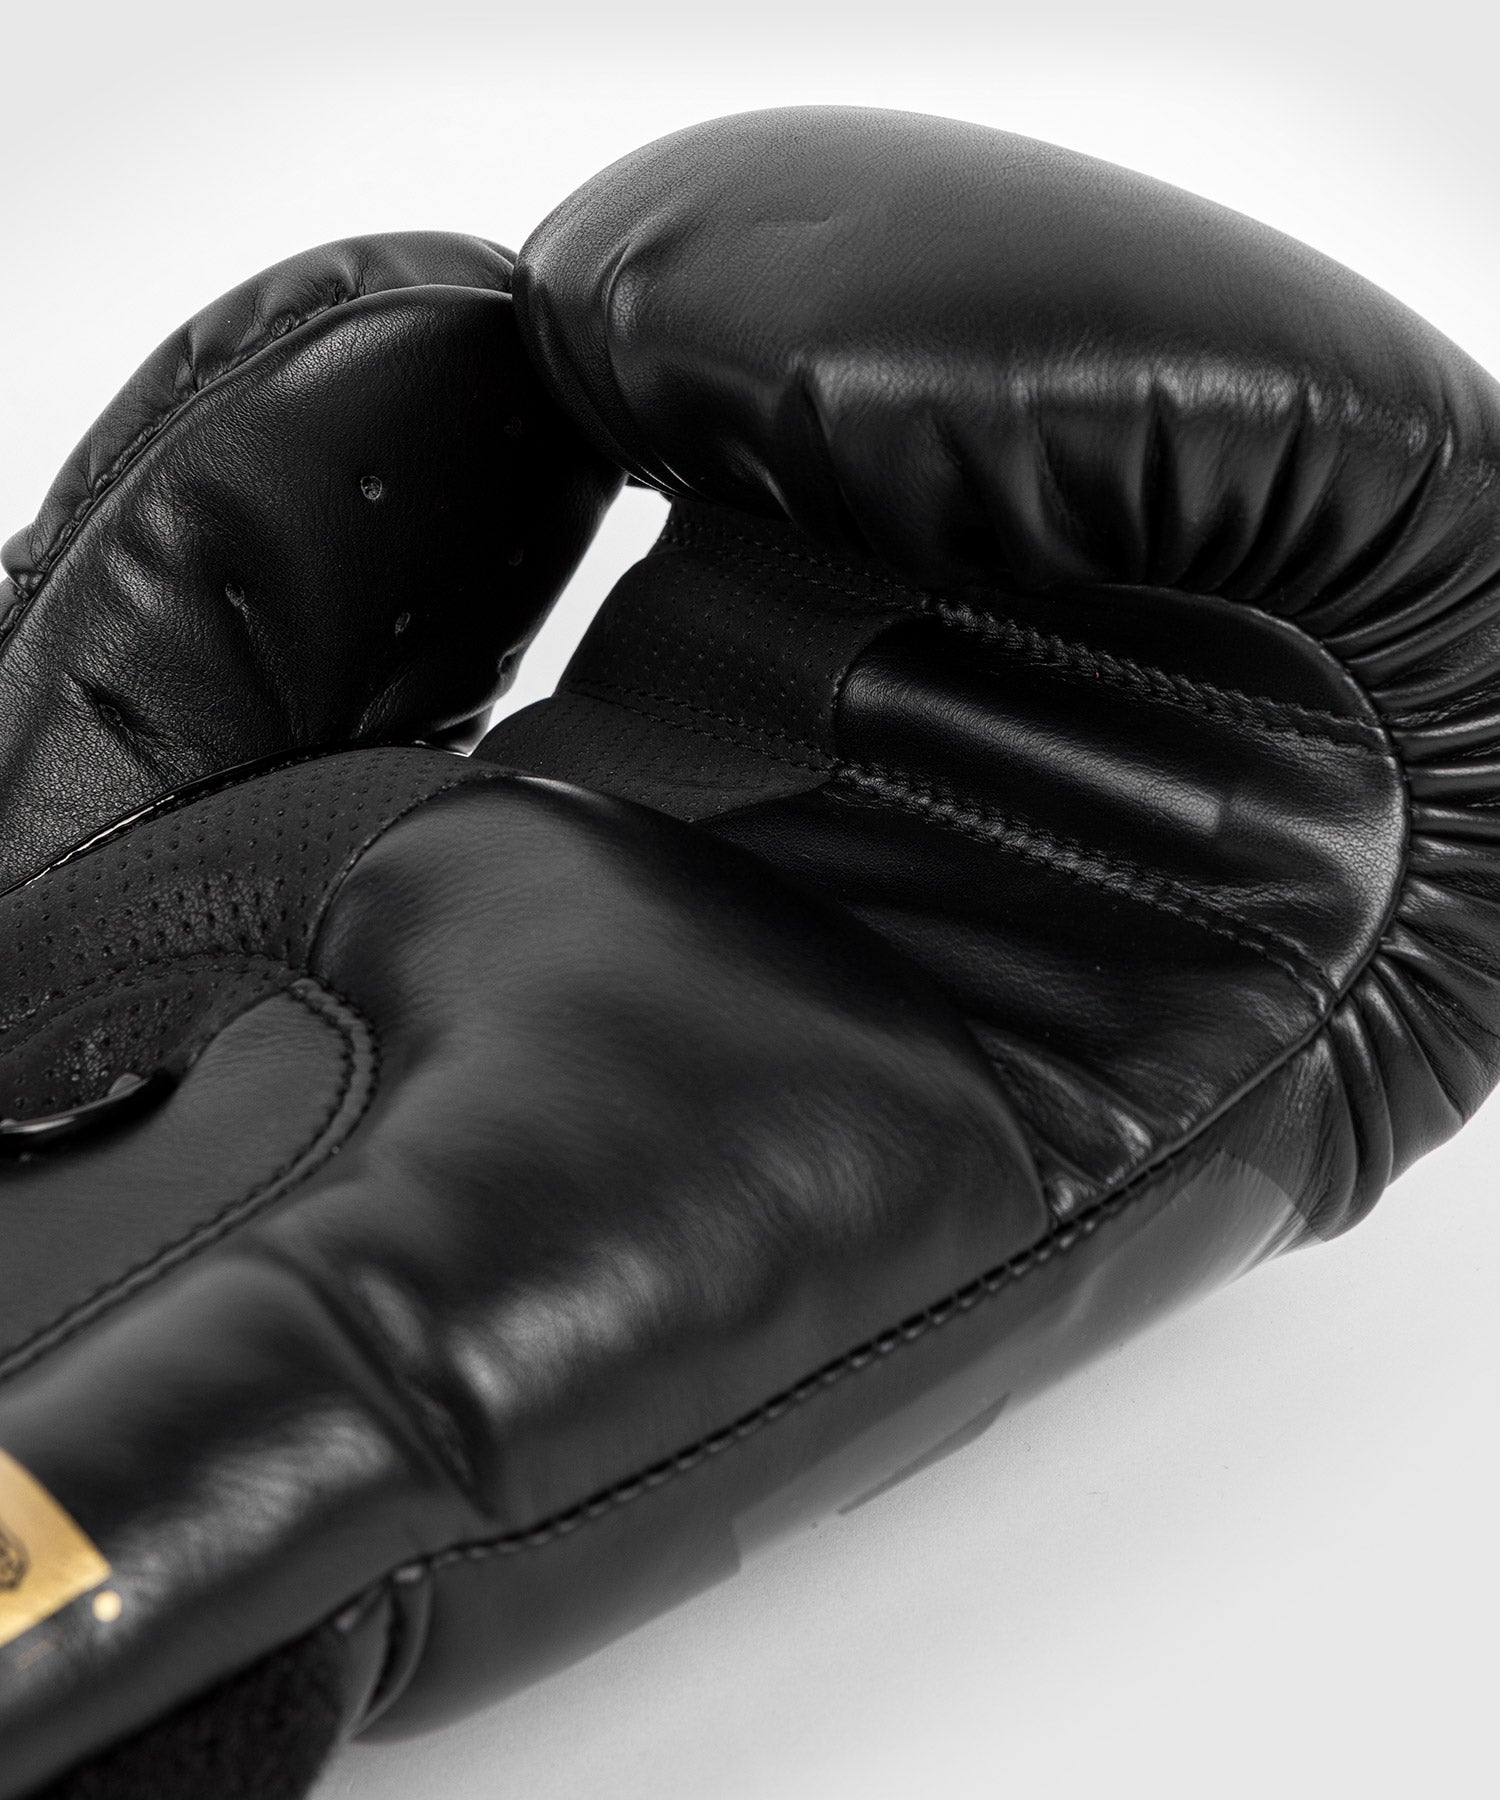 Gants de boxe Venum Contender 2.0 - Gants de Boxe - Gants & Protections -  Sports de combat